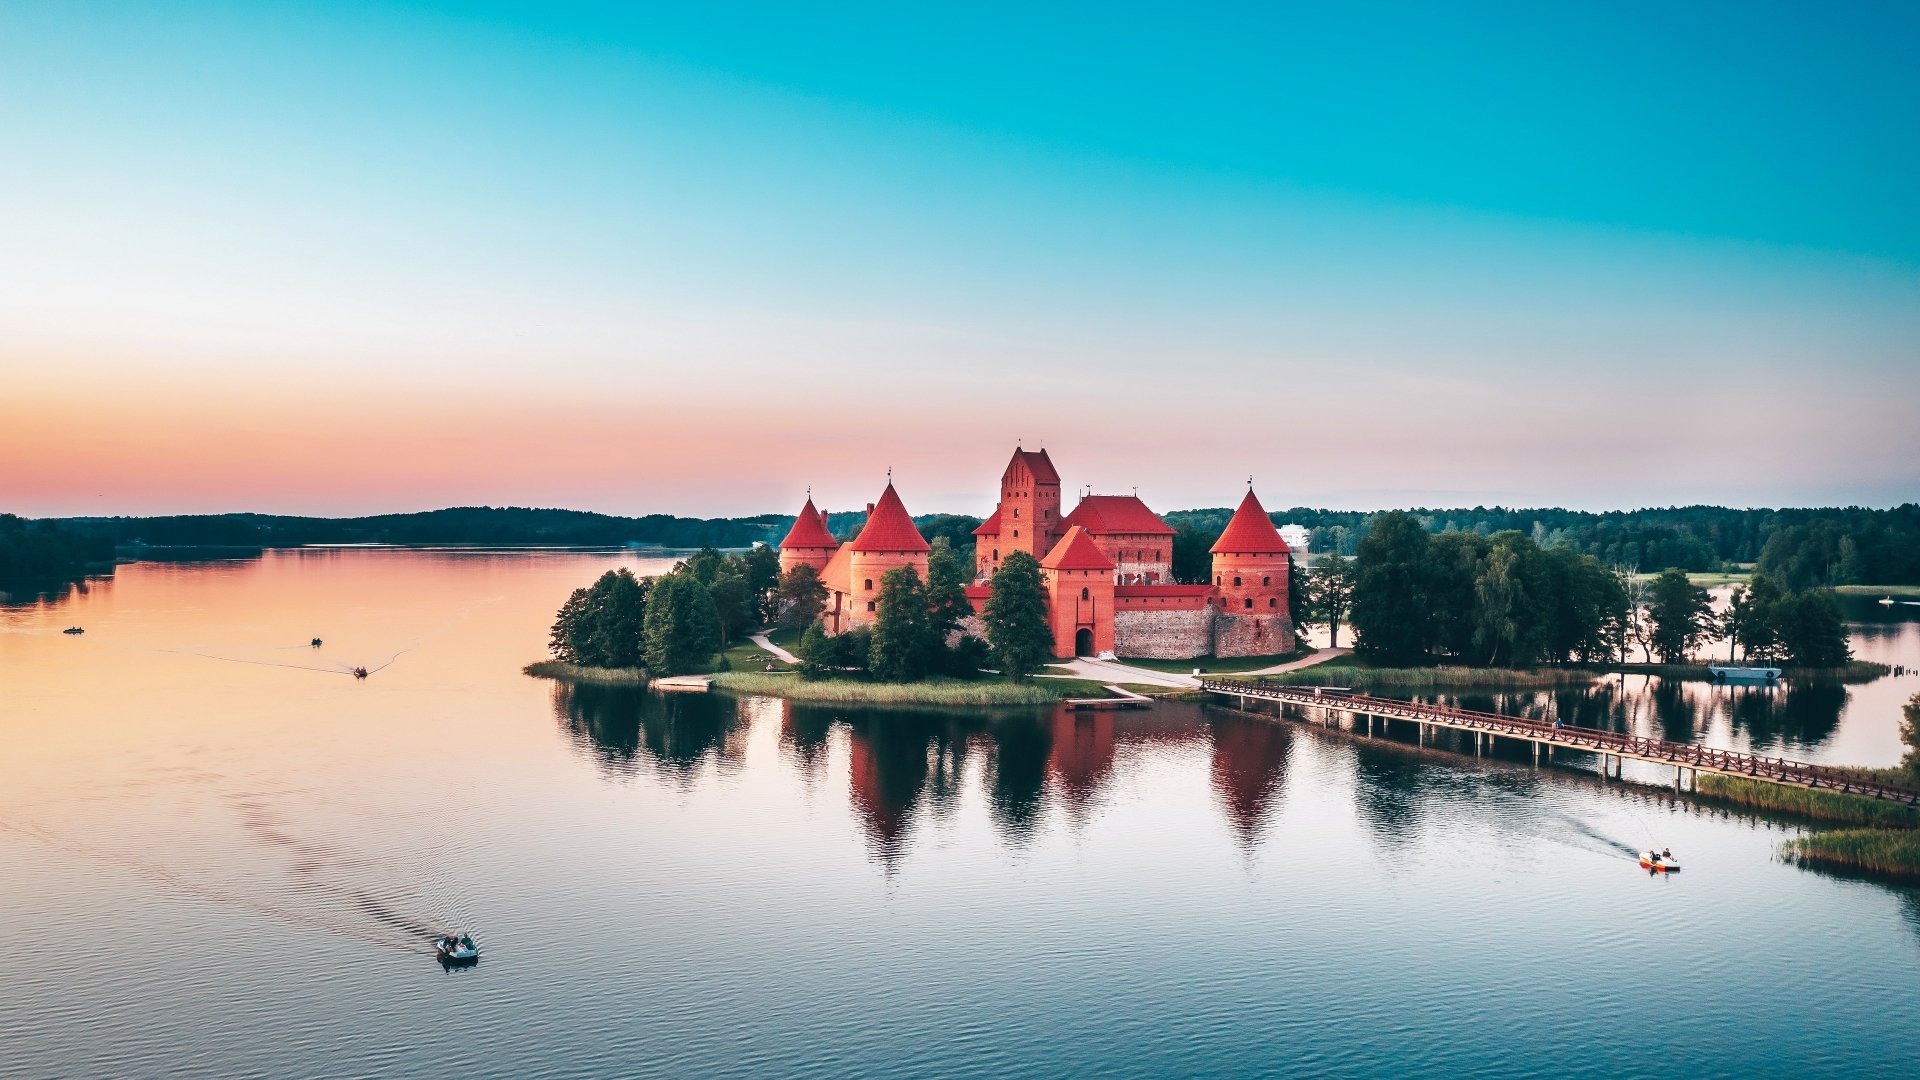 Trakai Island Castle 4k Ultra HD Wallpaper